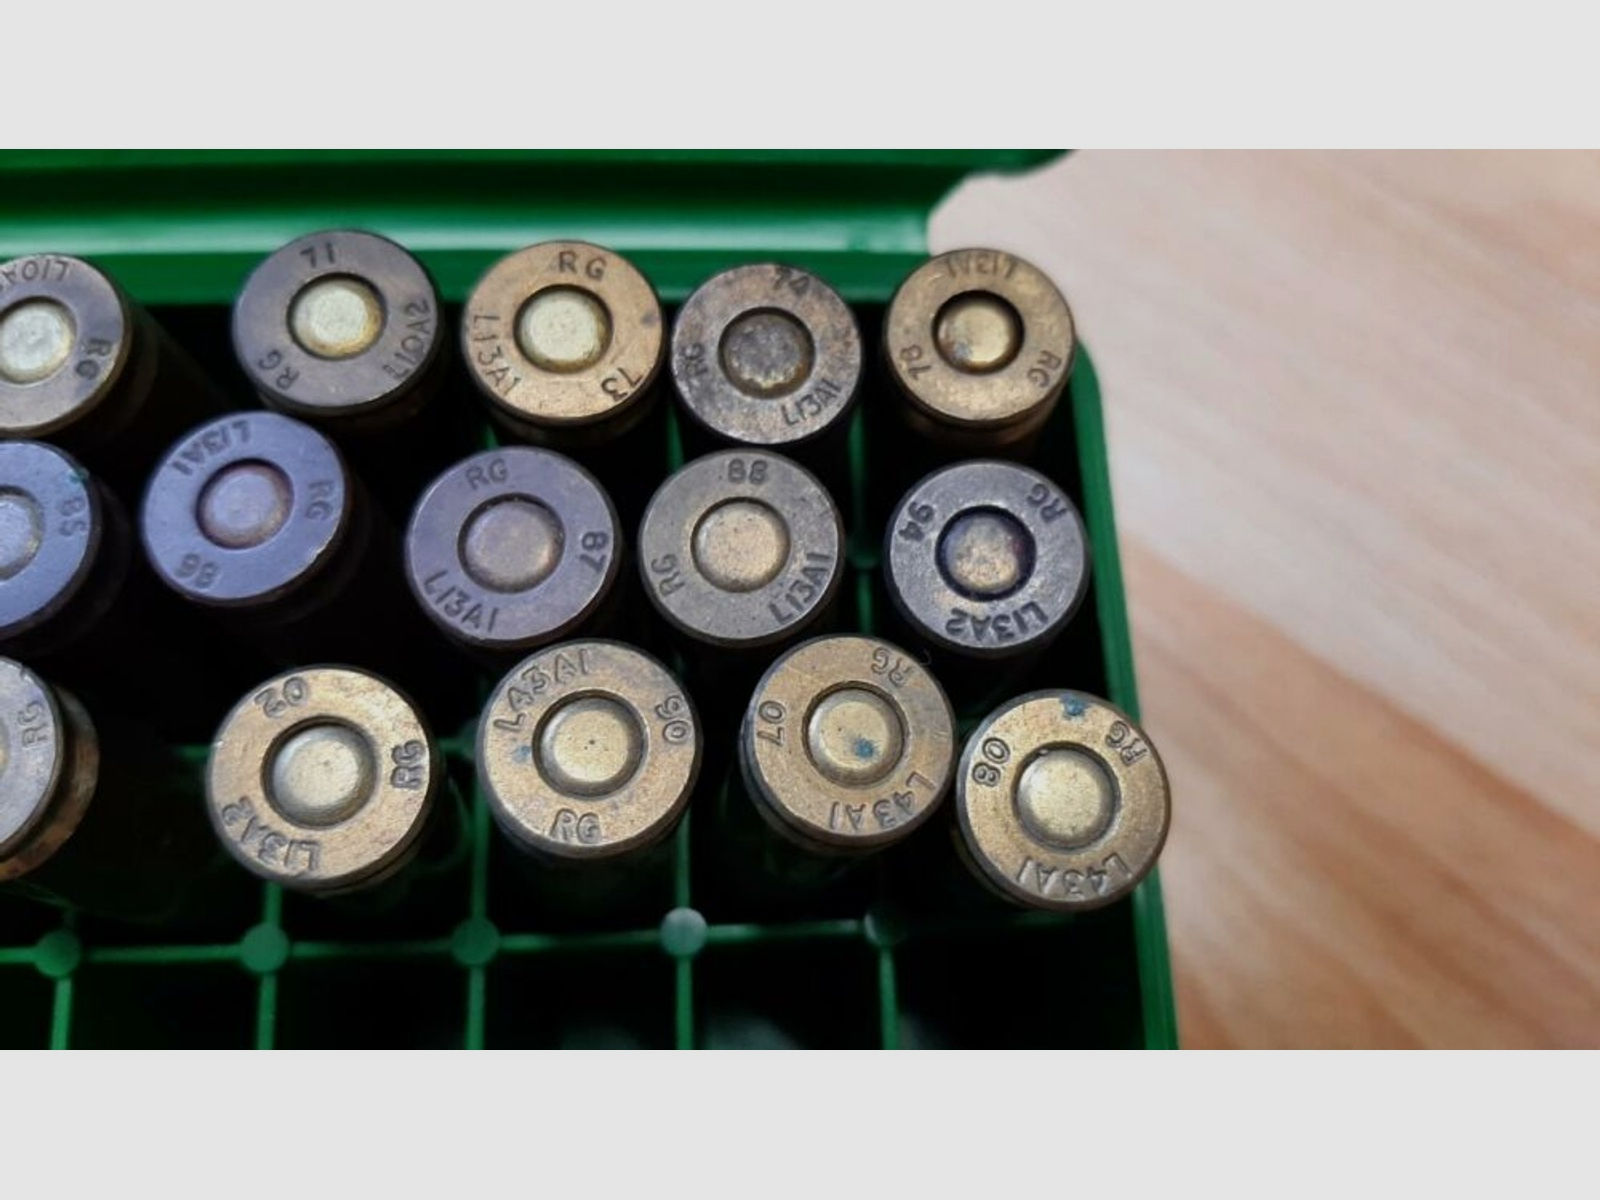 Sammlermunition Platzpatronen unterschiedlicher Lose	 RG Kartuschenmunition Salut Militär Behörde